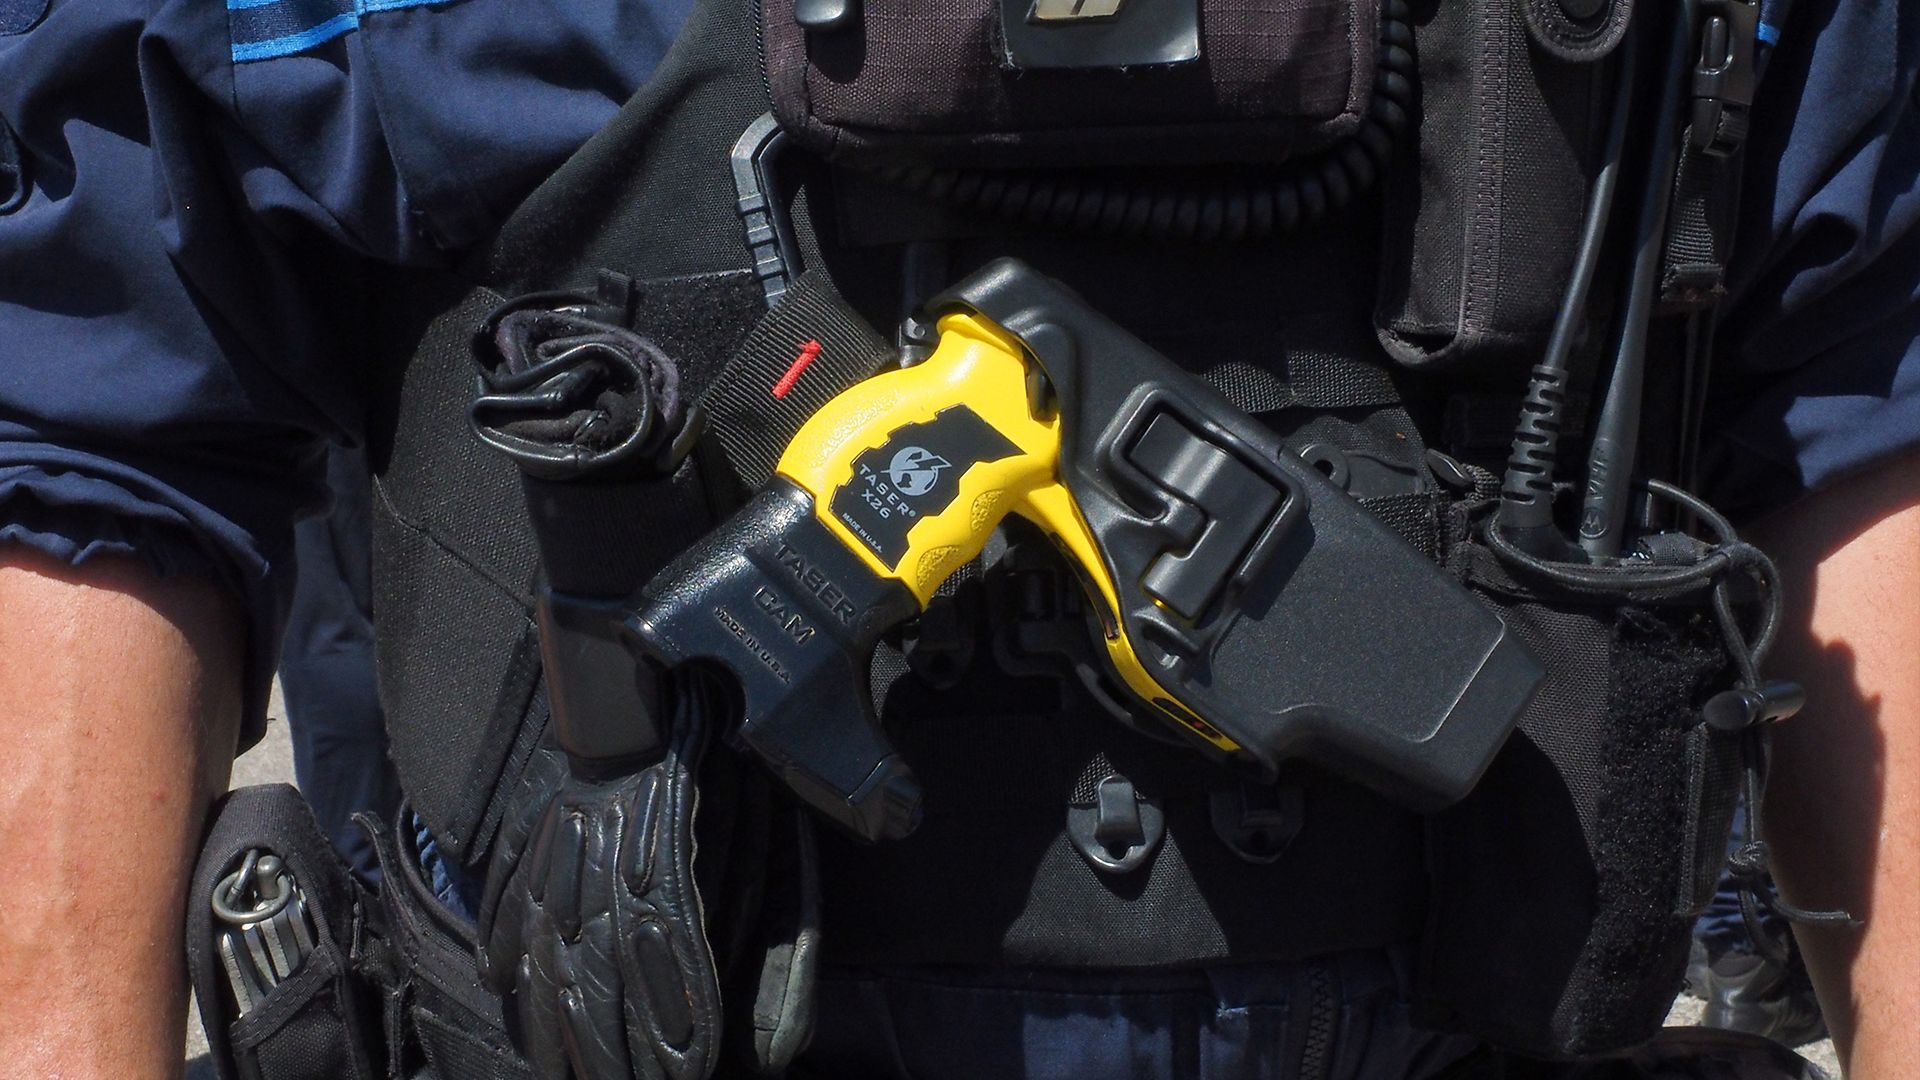 La caméra et le taser doivent-ils faire partie de l'équipement de base des policiers ?